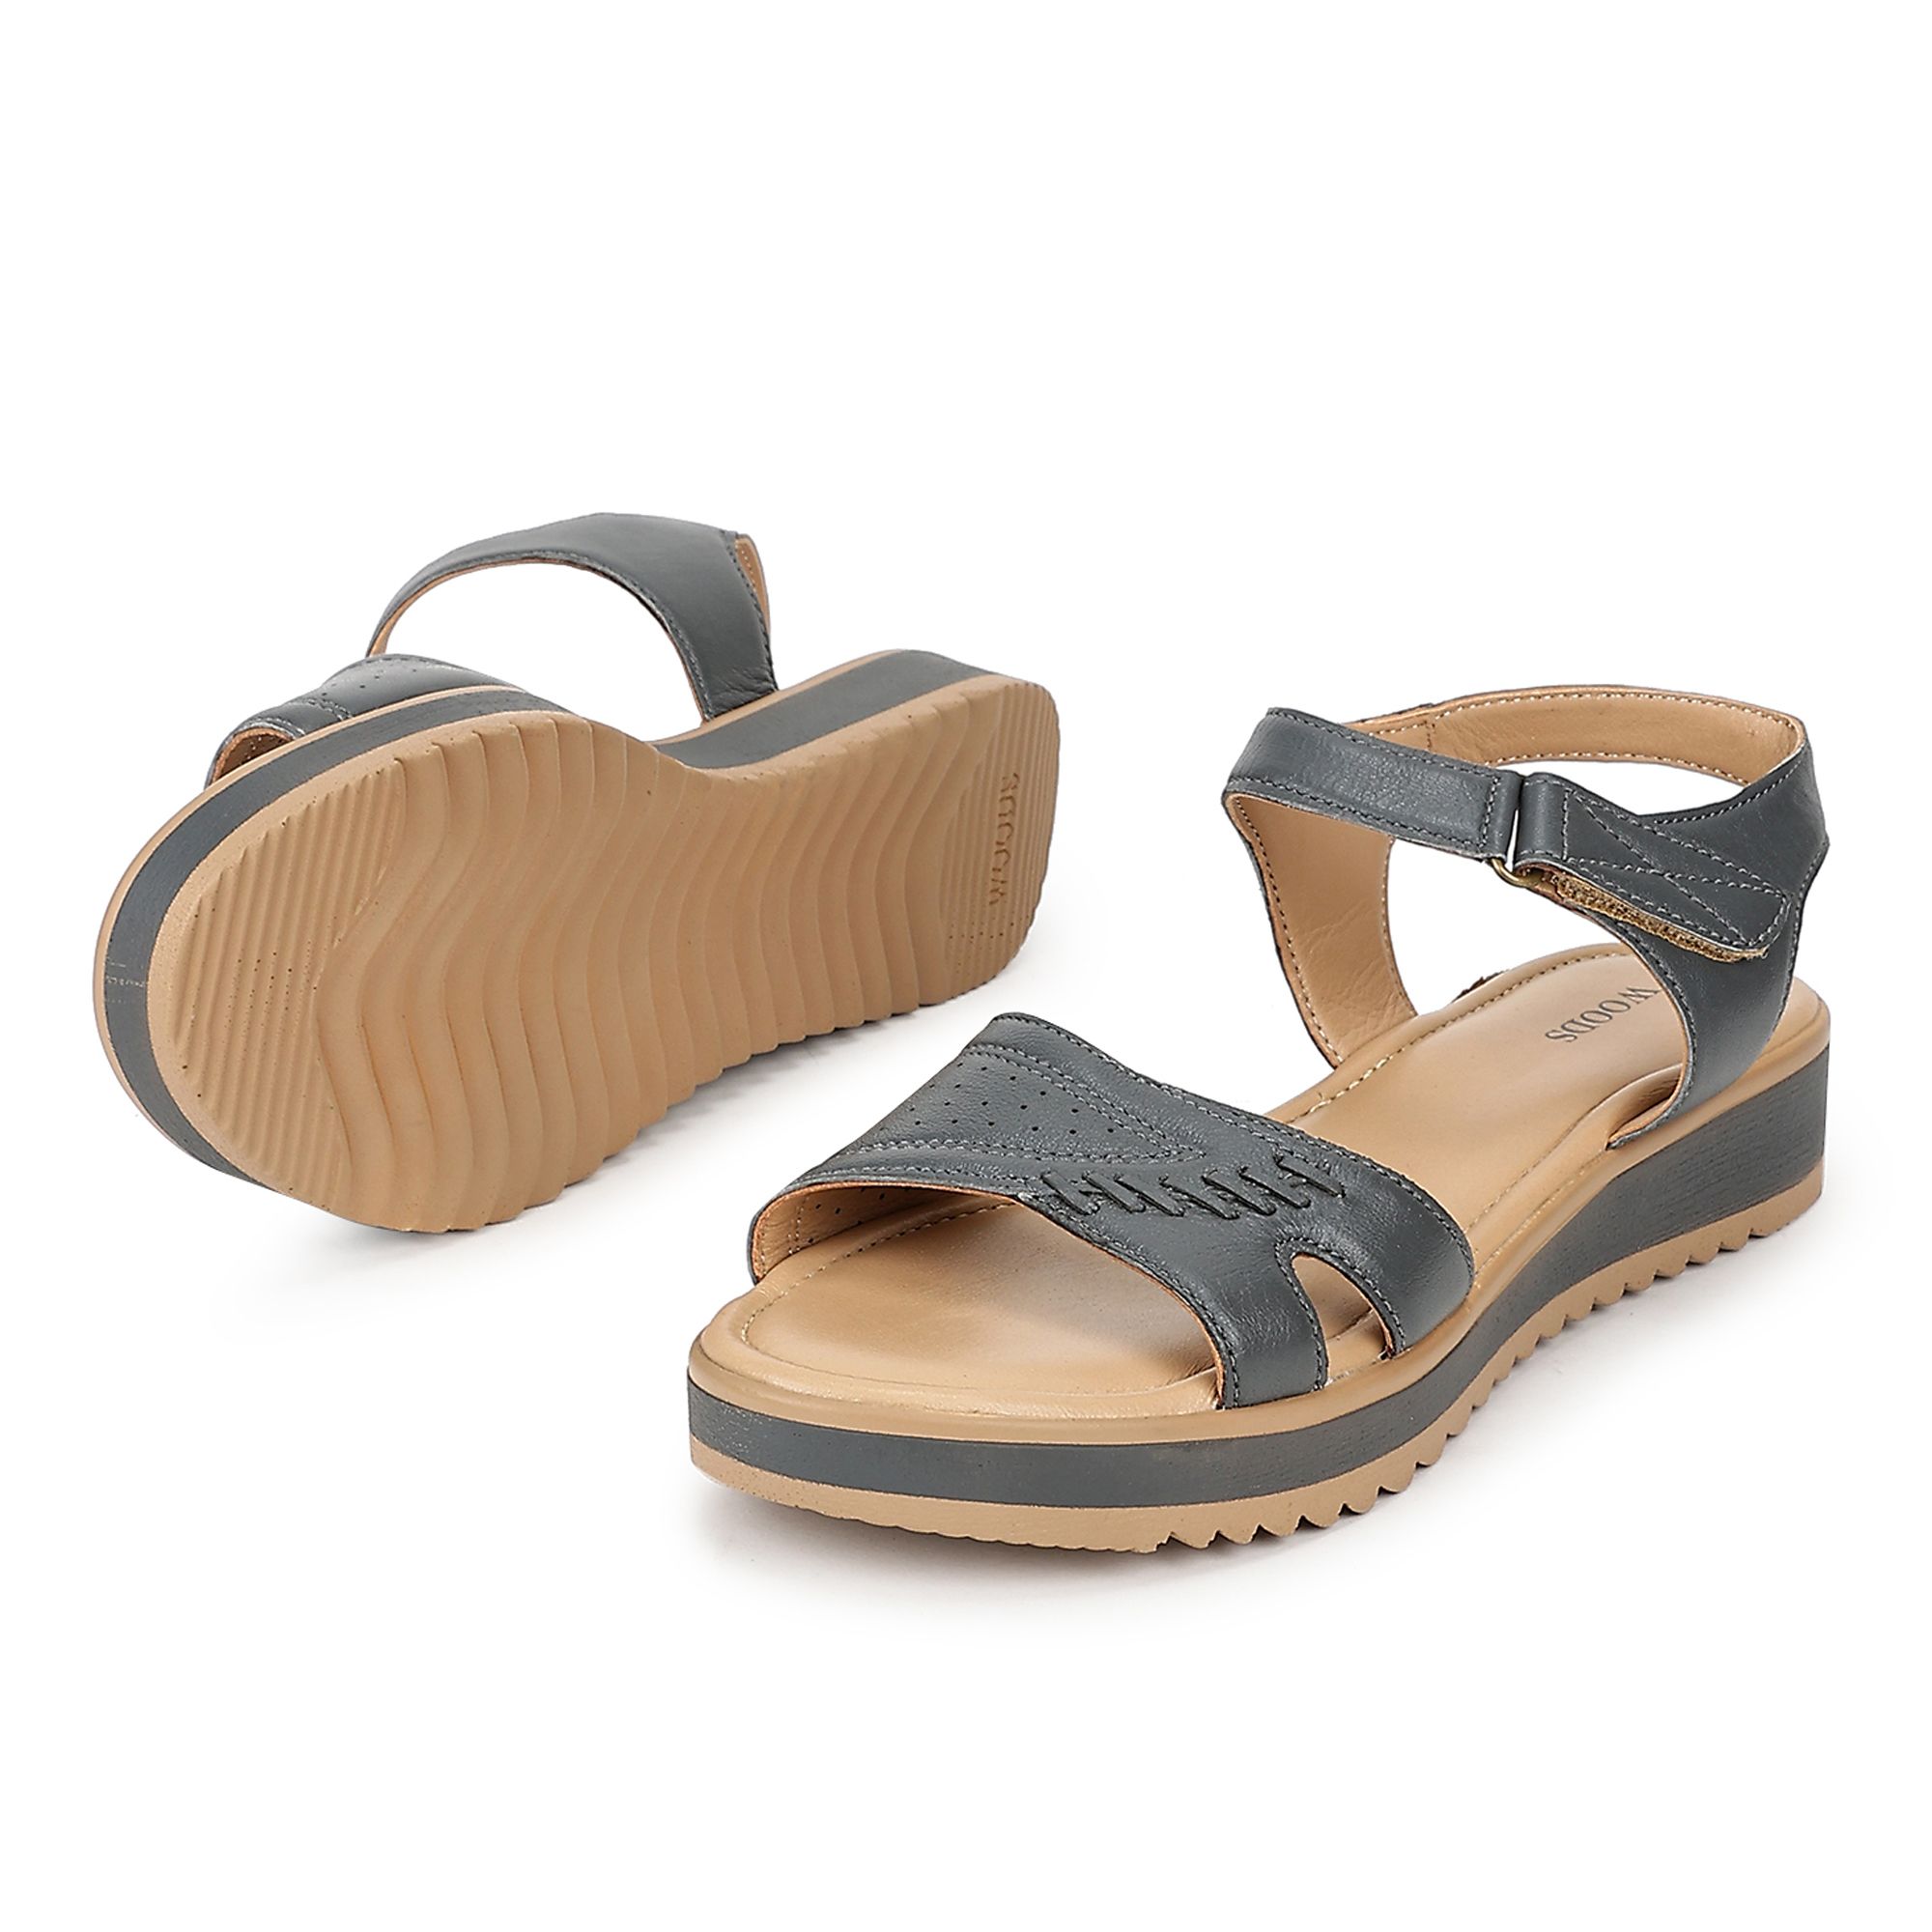 Grey sandal for women